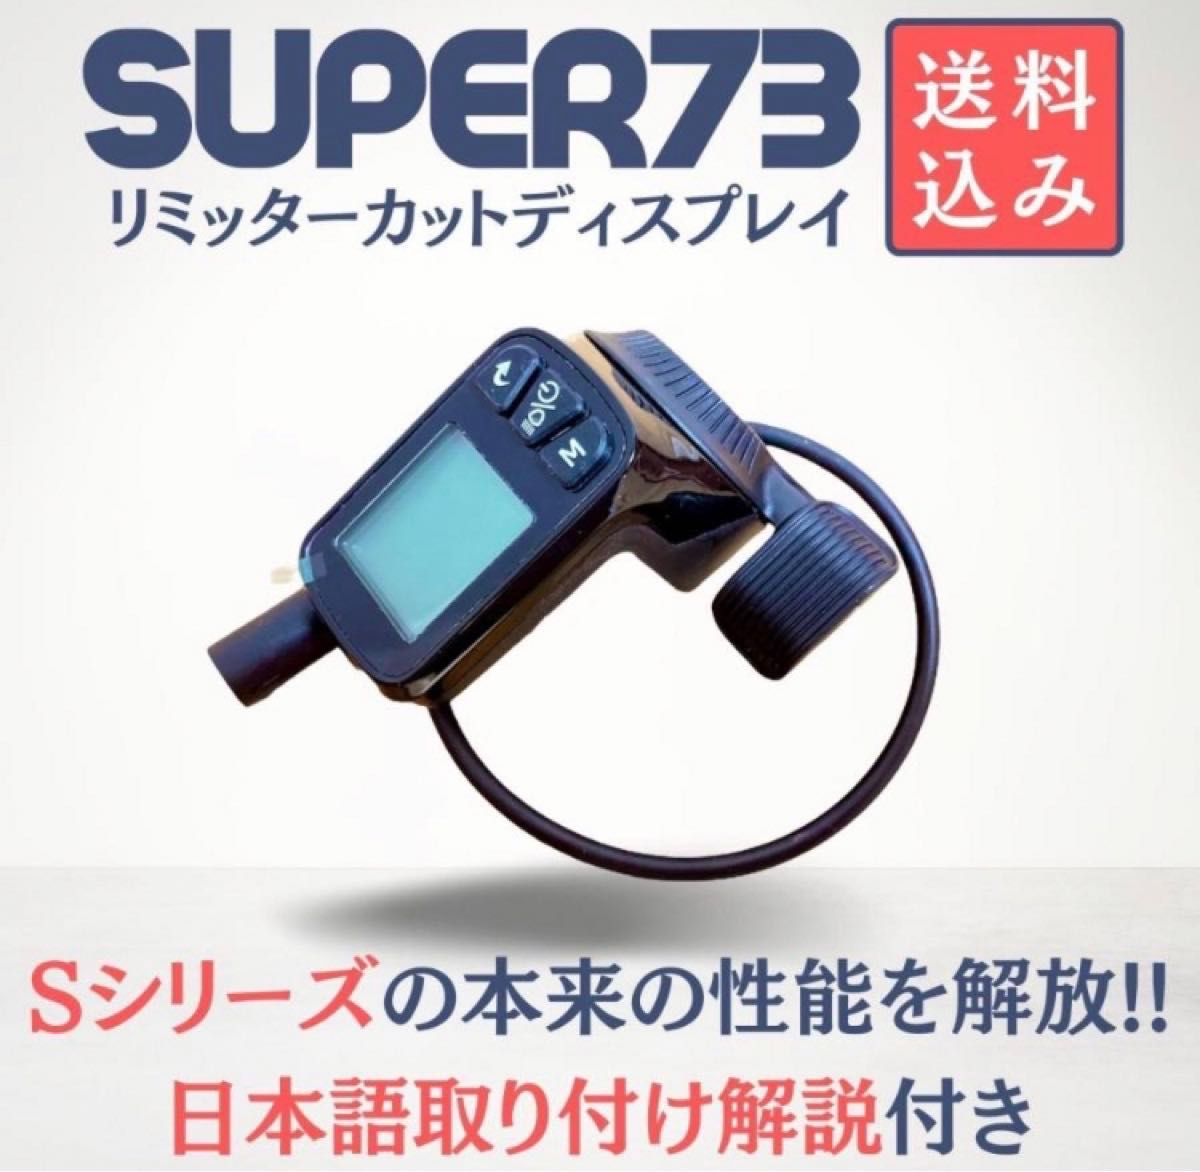 数量限定値下げ★SUPER73 リミッターカット ディスプレイ 日本語取説付き